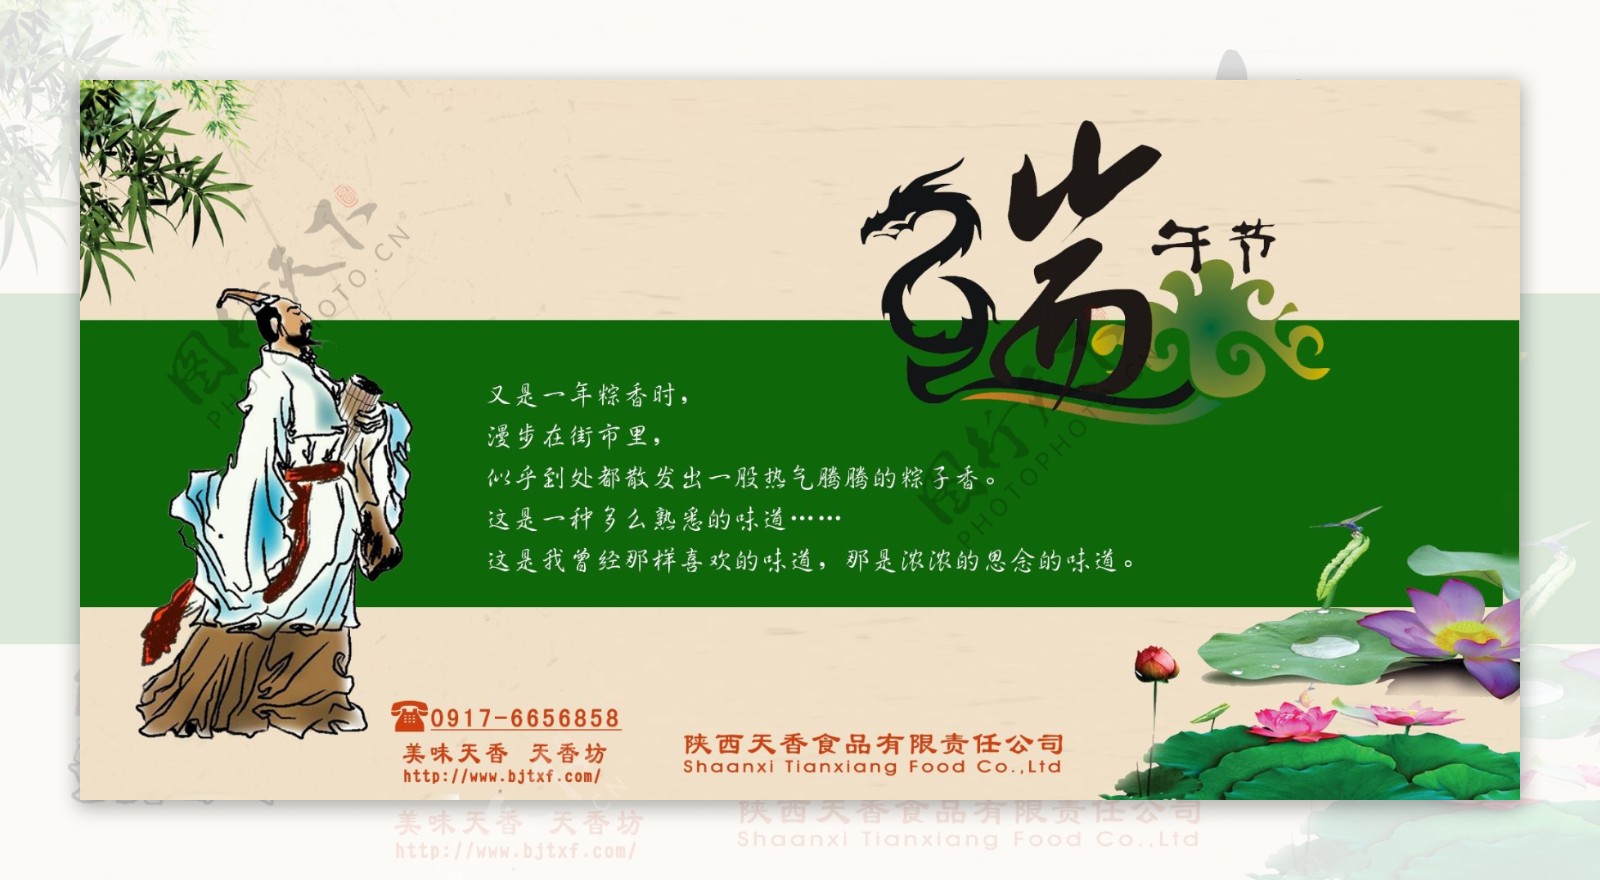 端午节粽子促销海报背景设计PSD素材